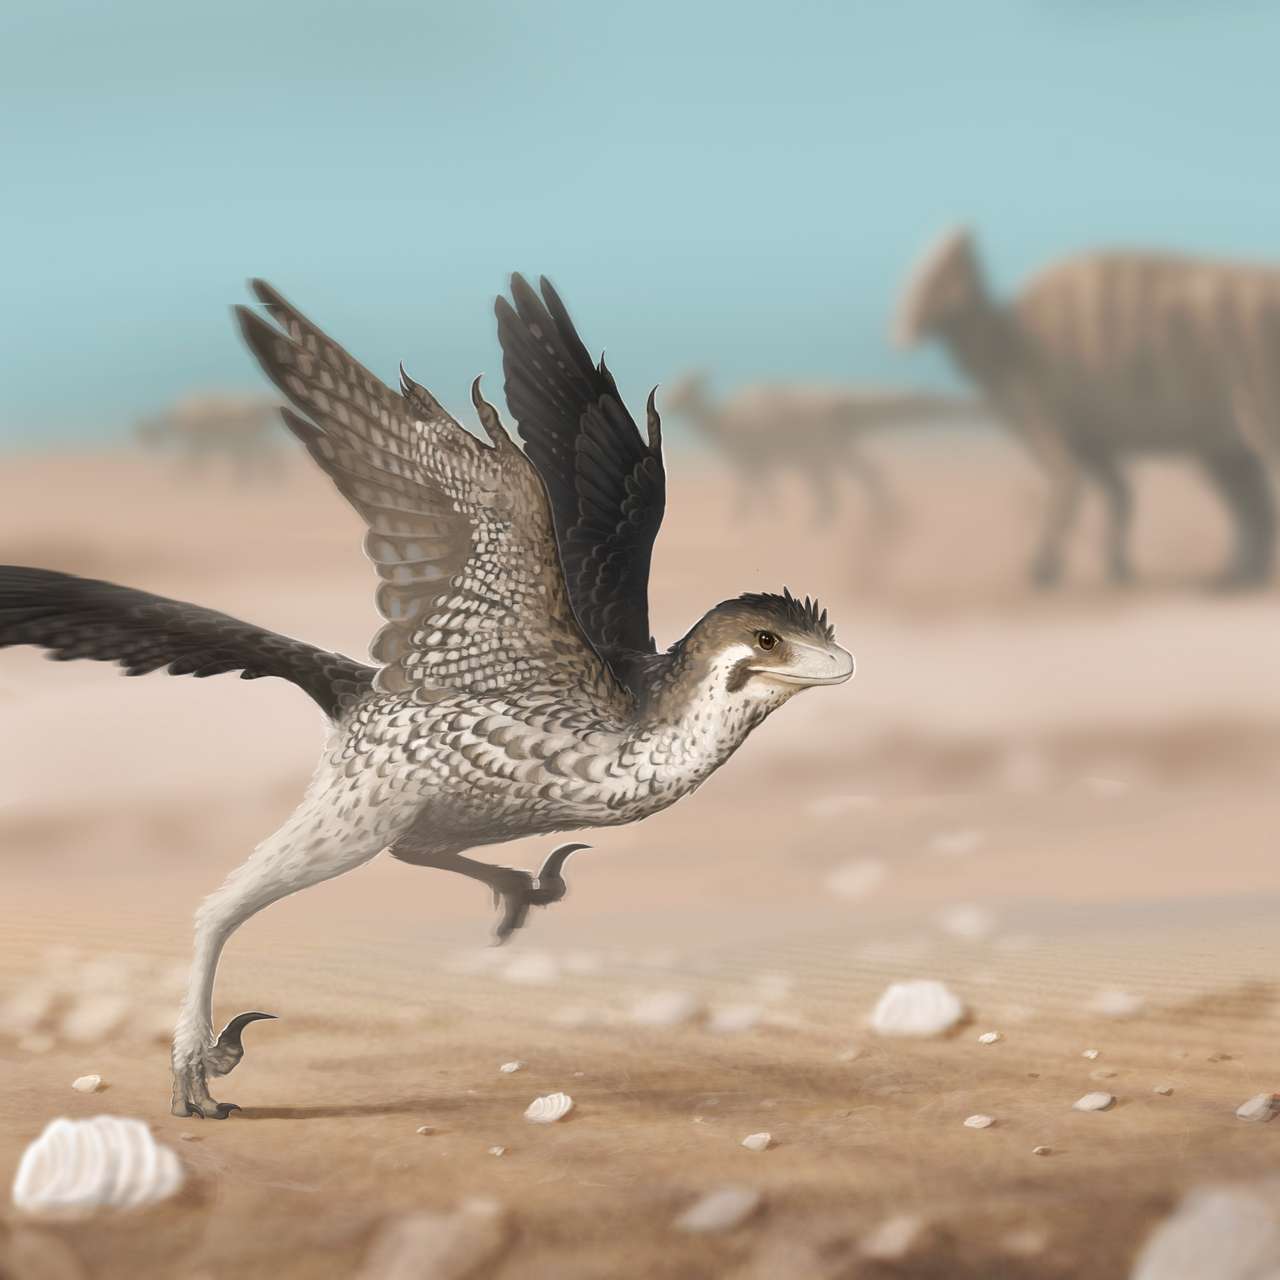 Tous les dinosaures portaient des plumes, selon un paléontologue belge - La  Libre